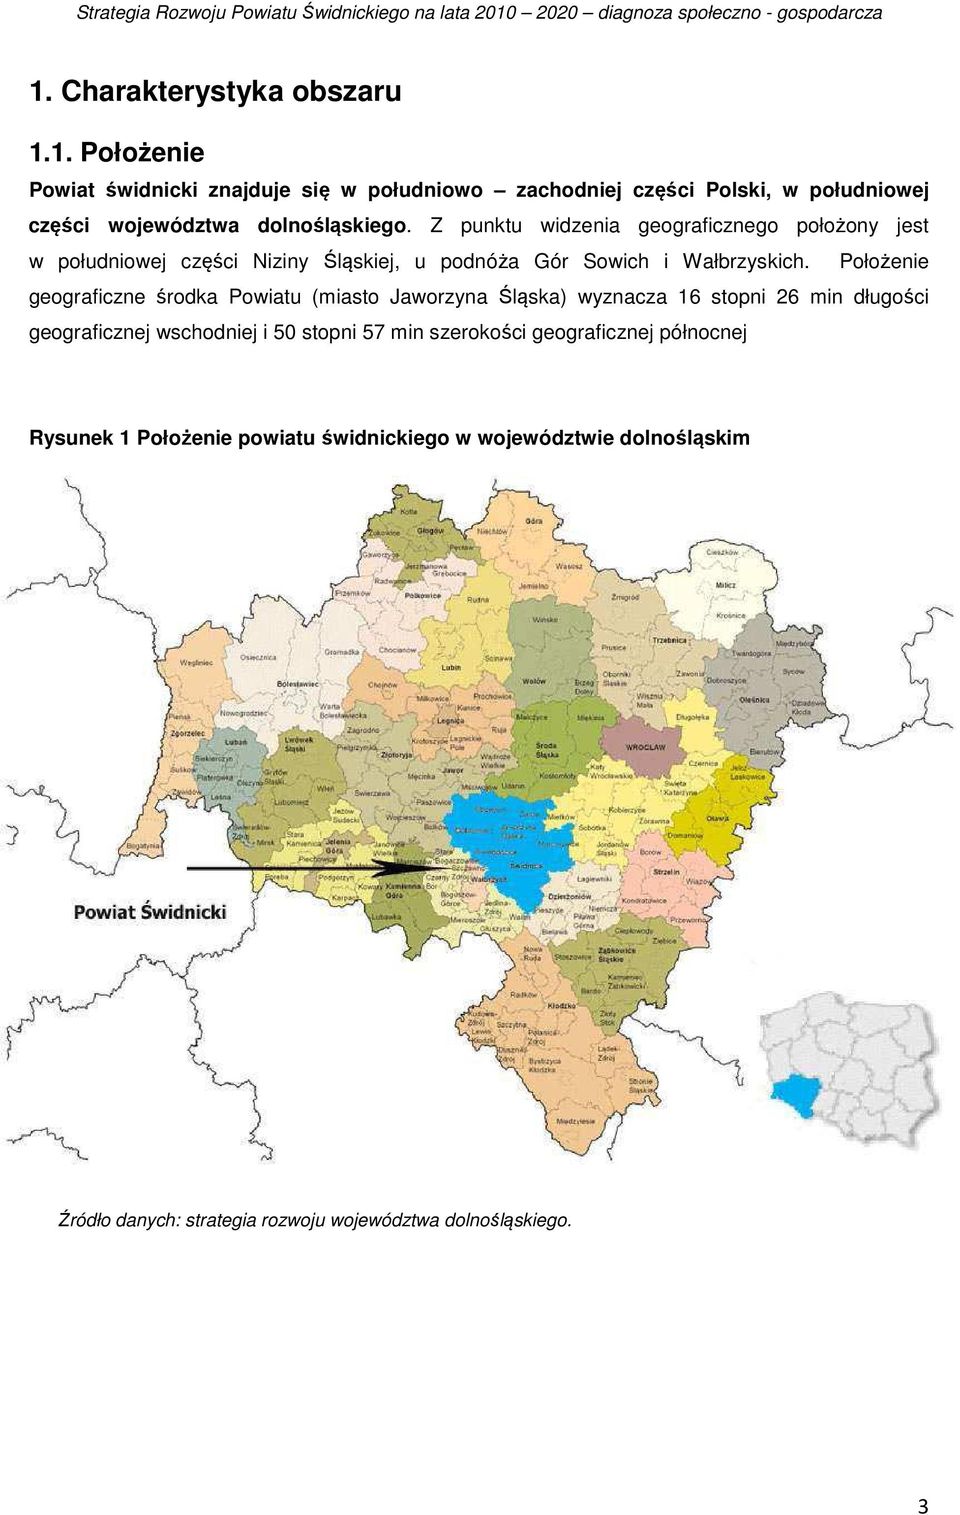 Położenie geograficzne środka Powiatu (miasto Jaworzyna Śląska) wyznacza 16 stopni 26 min długości geograficznej wschodniej i 50 stopni 57 min